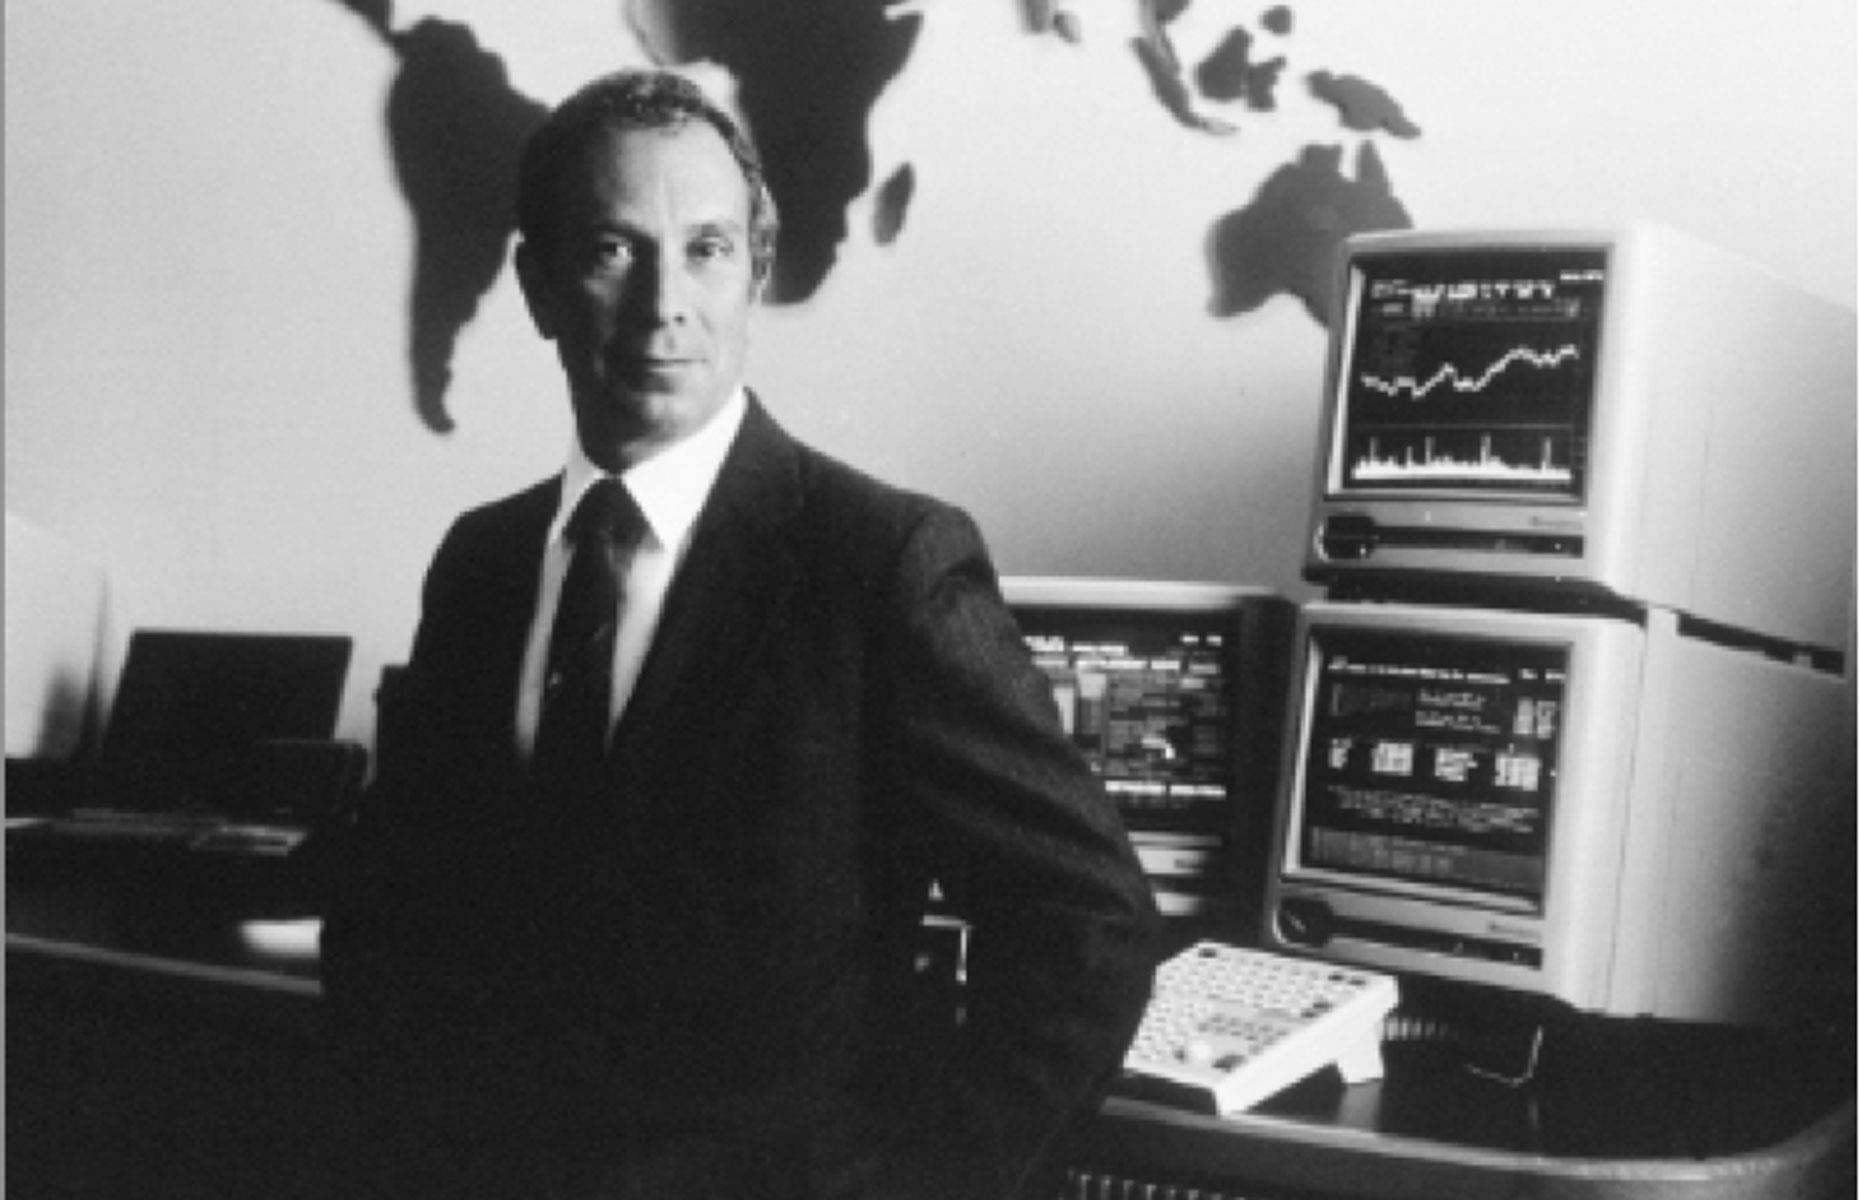 1981: Bloomberg